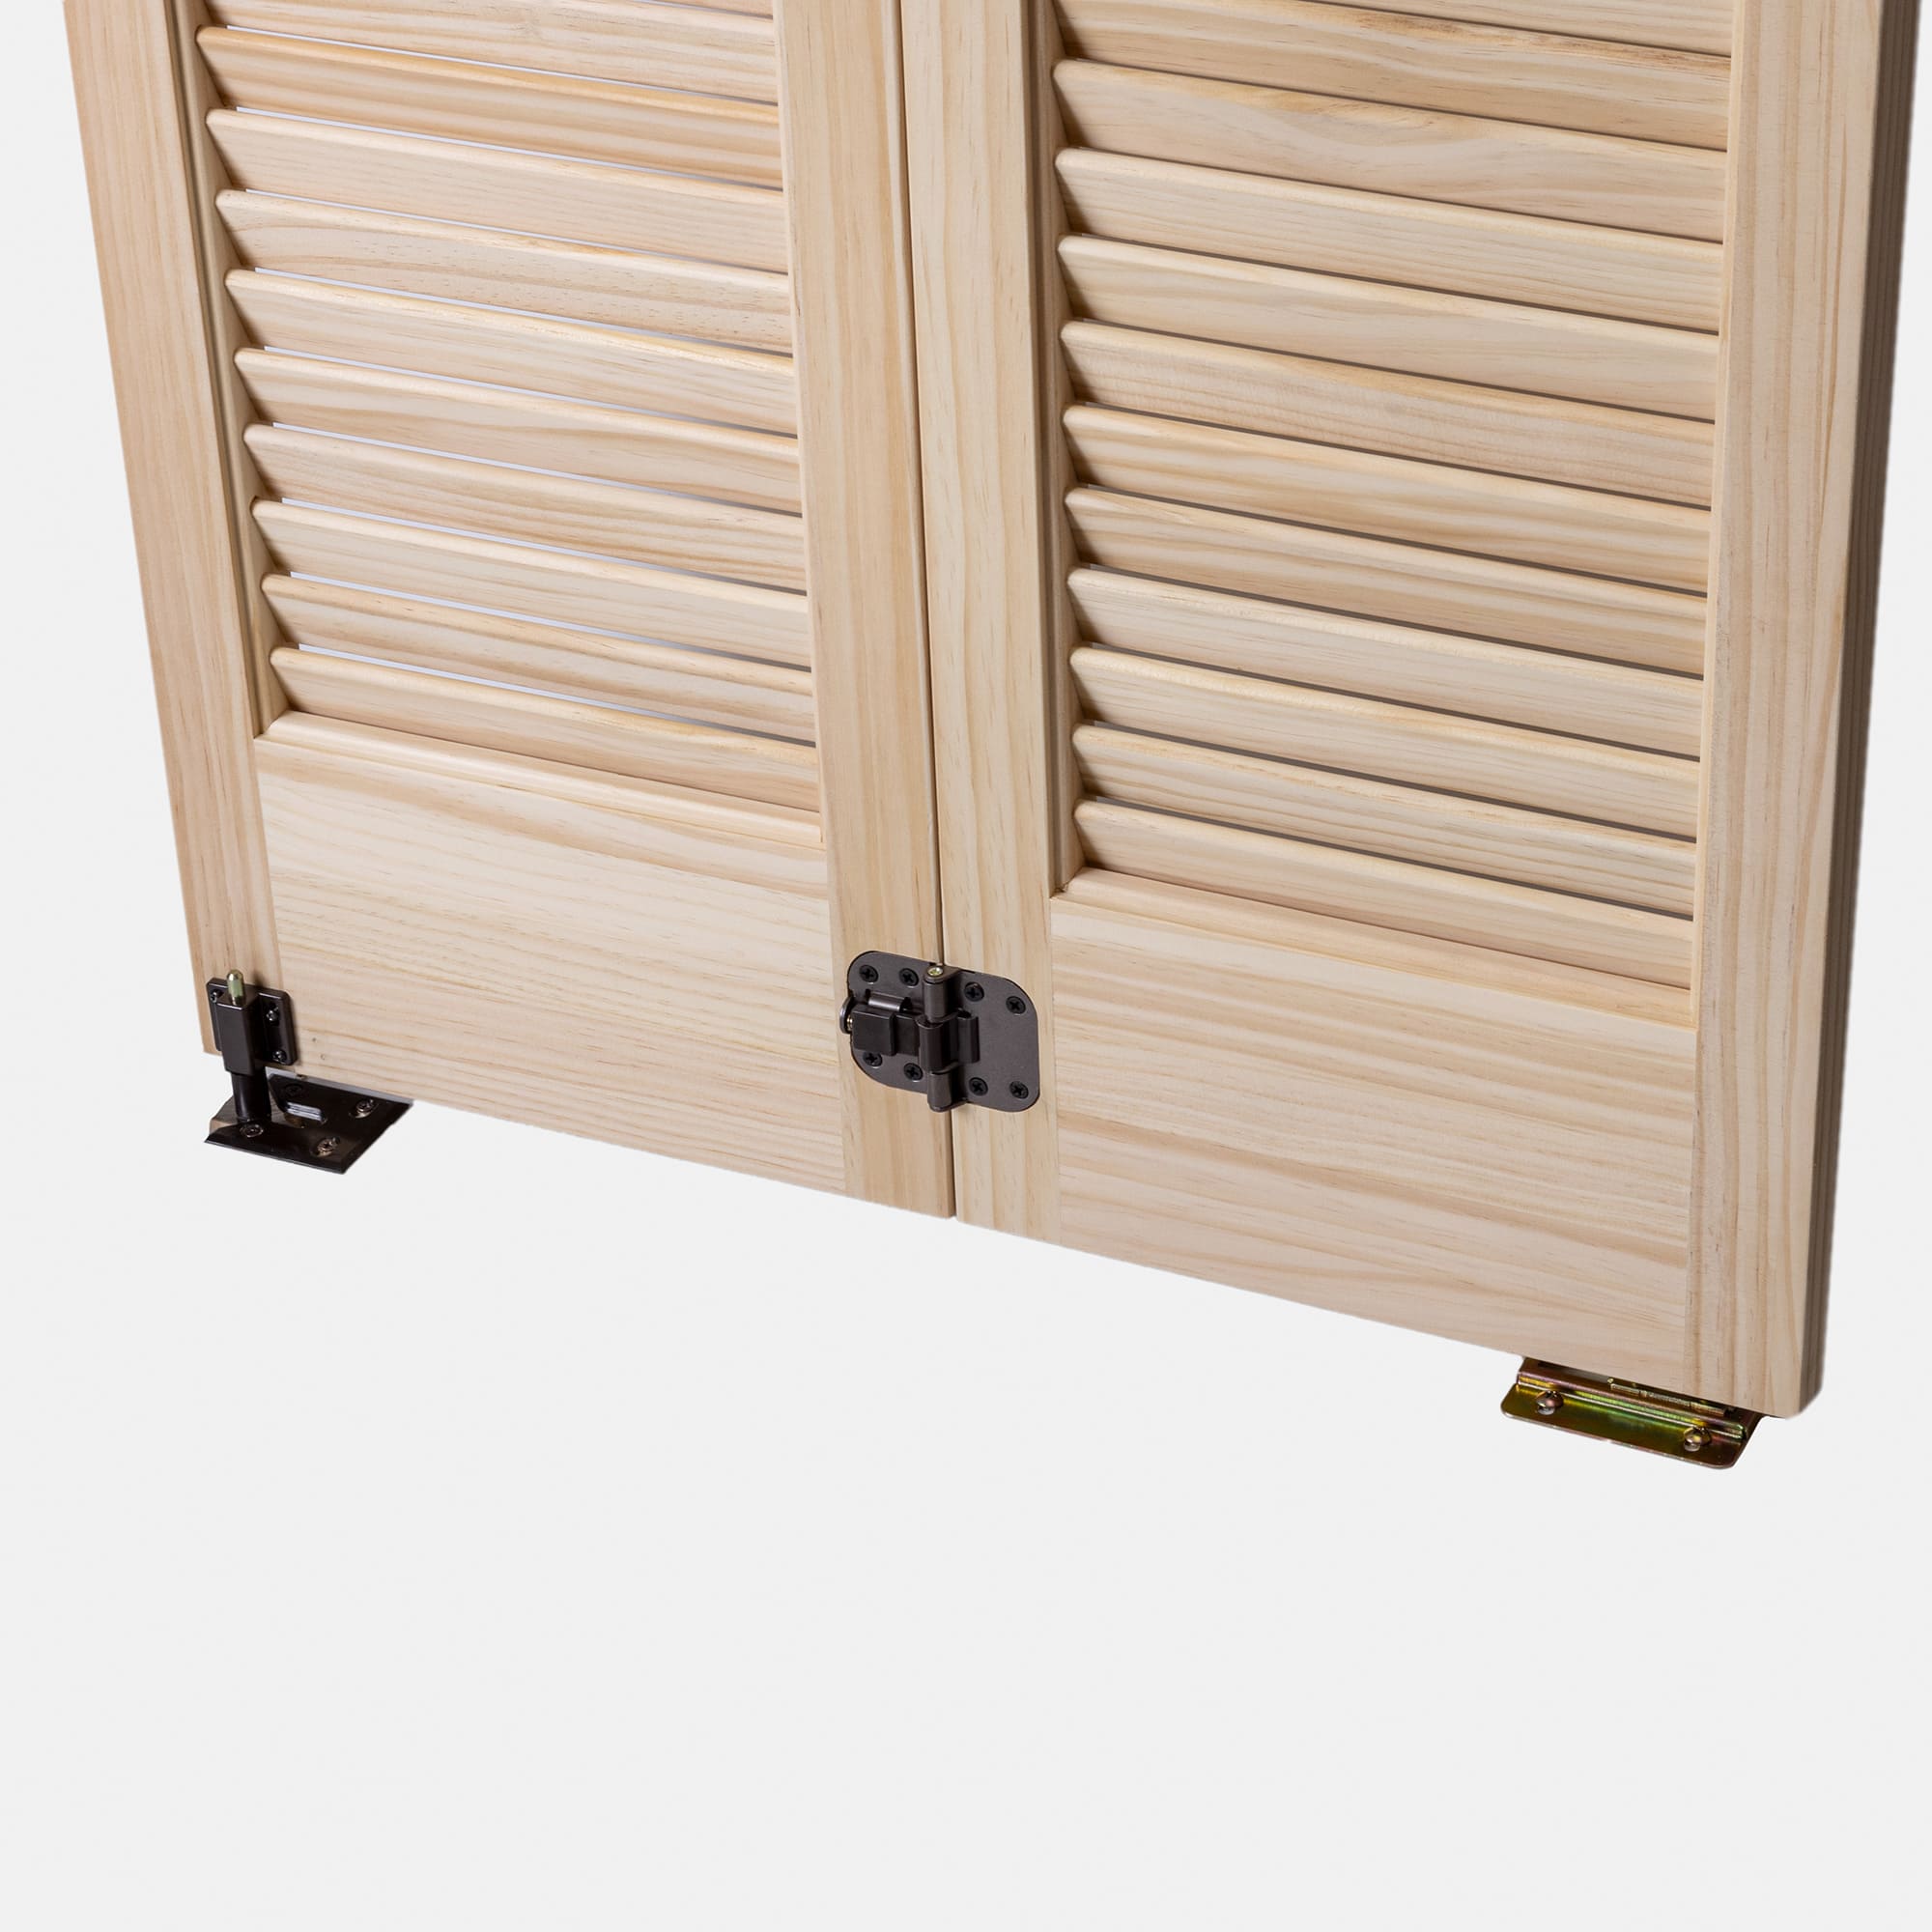 木製パインルーバー折れ戸 両開き 1509×2007 DW-DR011-04-G111 扉の裏側。振れ止め、ボトムピボット受け金具が付属します